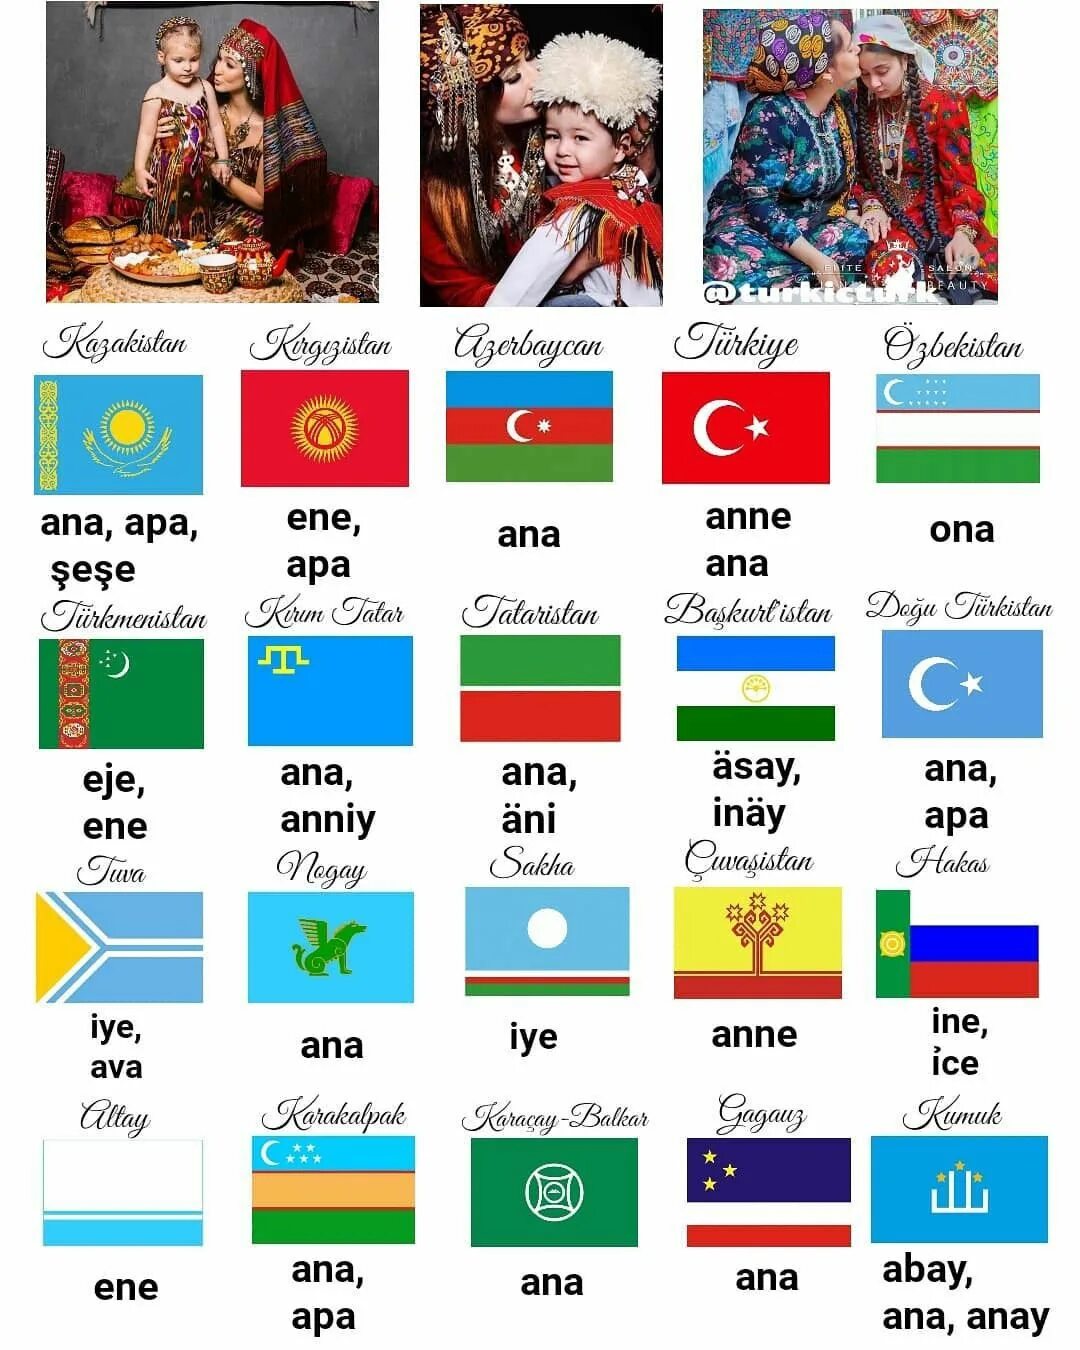 Язык туркменов. Турецкий язык тюркские языки. Тюркские народы. Флаги тюркоязычных народов. Флаги всех тюркских народов.